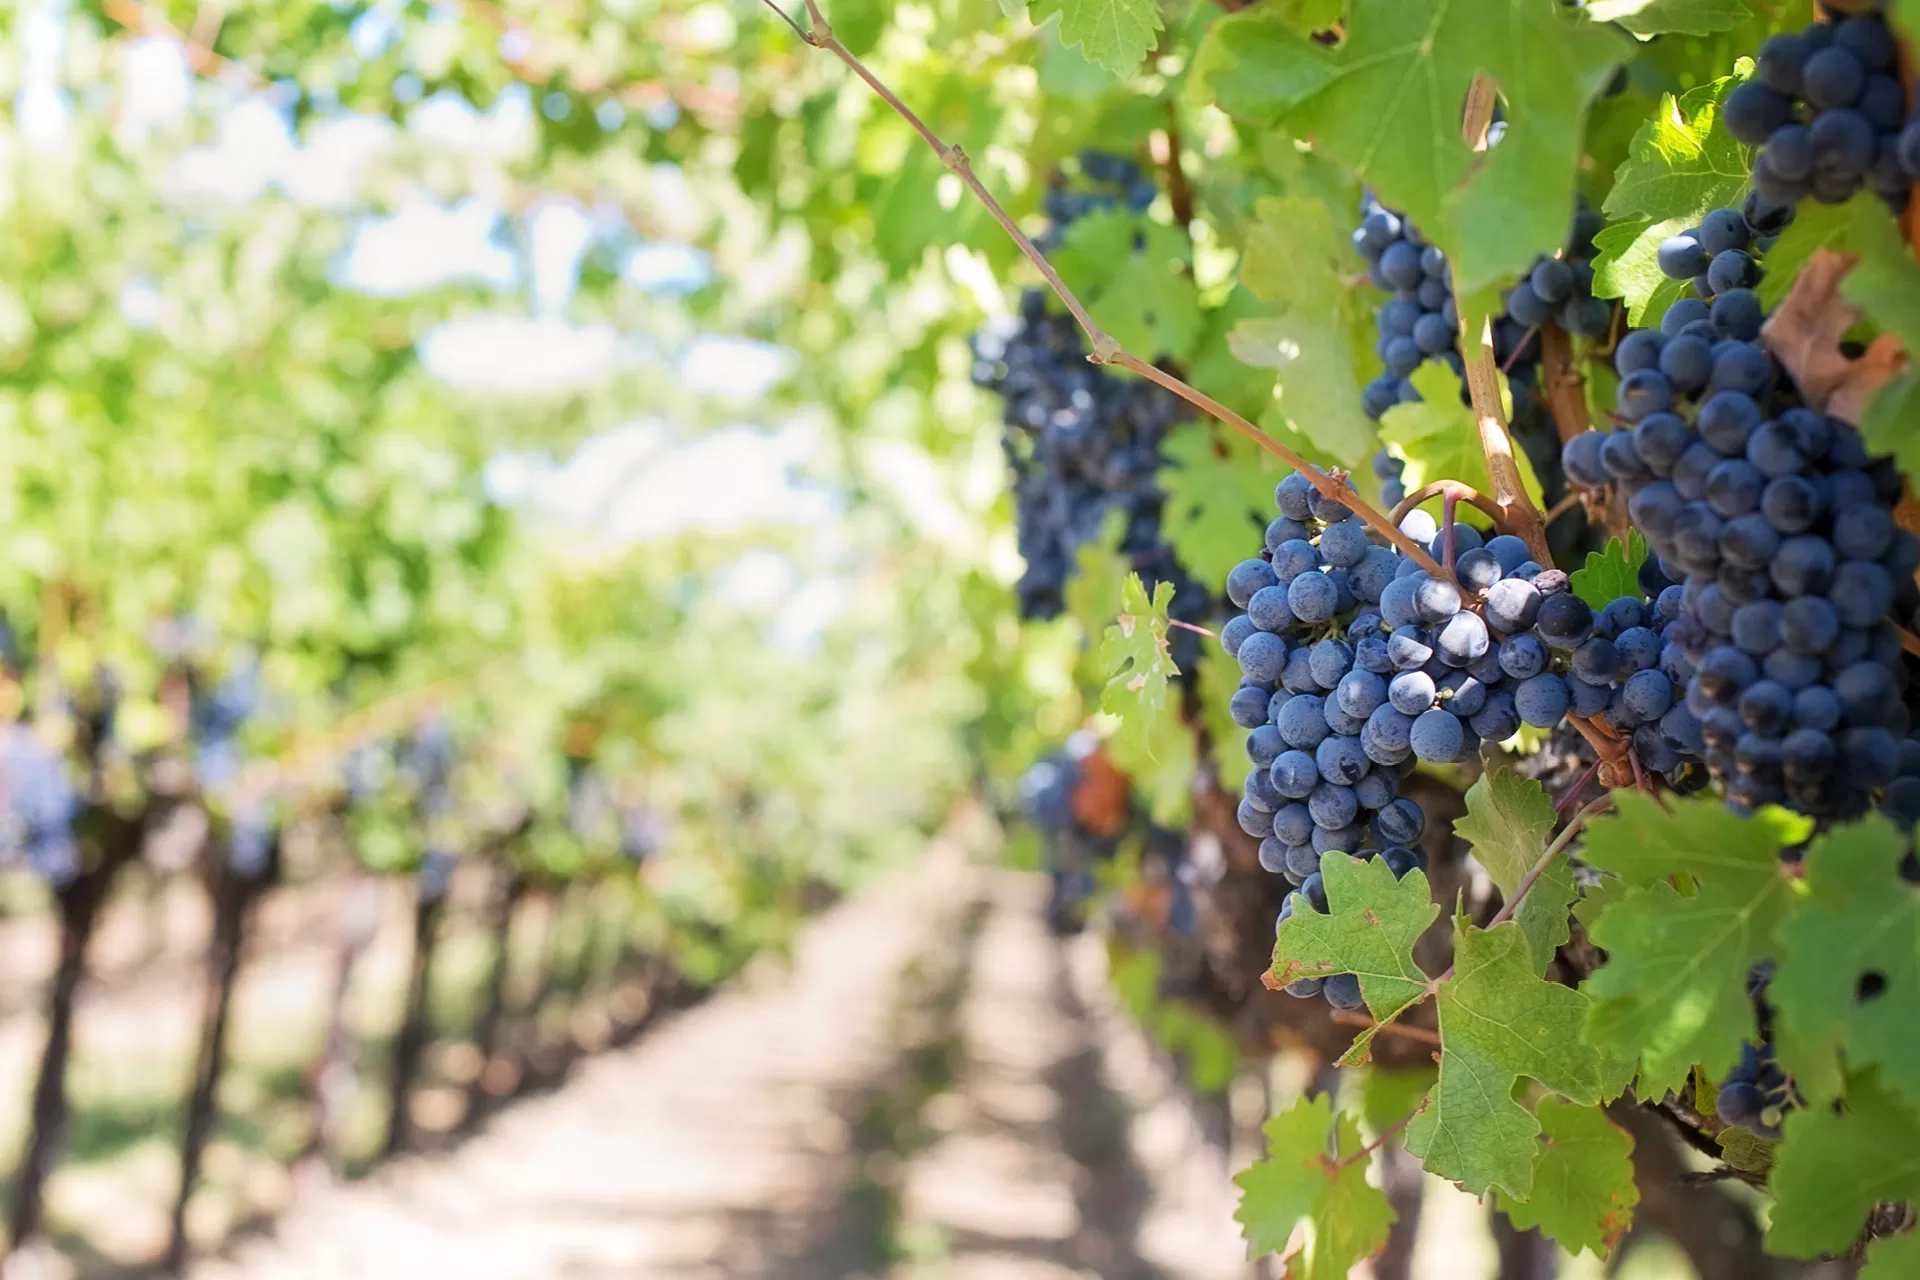 Eine Reihe von Weinreben im Rebberg, an den Rebstöcken hängen reife blaue Trauben.